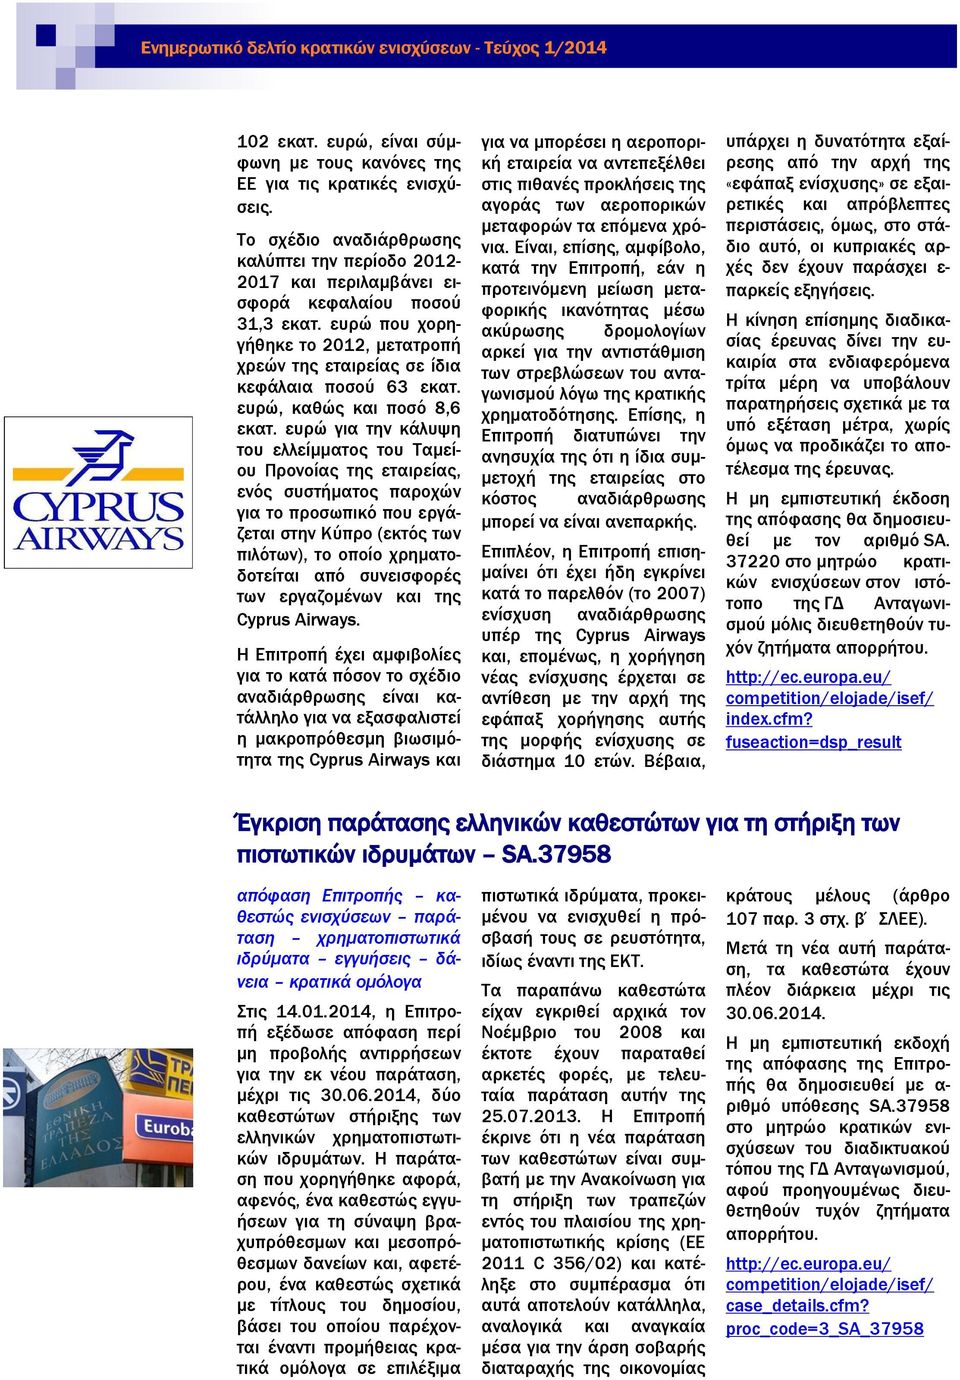 ευρώ για την κάλυψη του ελλείμματος του Ταμείου Προνοίας της εταιρείας, ενός συστήματος παροχών για το προσωπικό που εργάζεται στην Κύπρο (εκτός των πιλότων), το οποίο χρηματοδοτείται από συνεισφορές